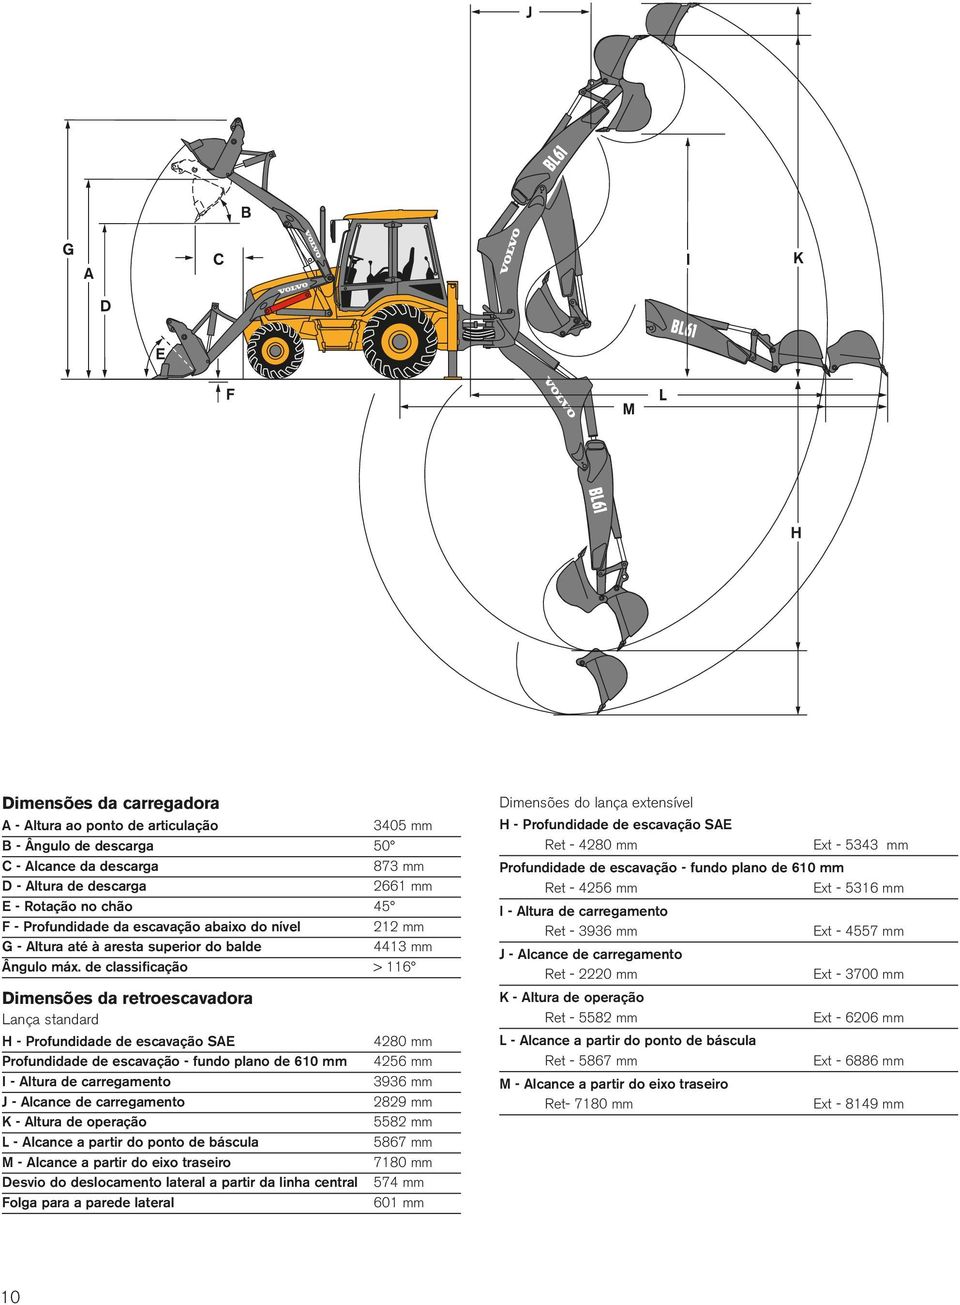 de classificação > 116 Dimensões da retroescavadora Lança standard H - Profundidade de escavação SAE Profundidade de escavação - fundo plano de 610 mm I - Altura de carregamento J - Alcance de